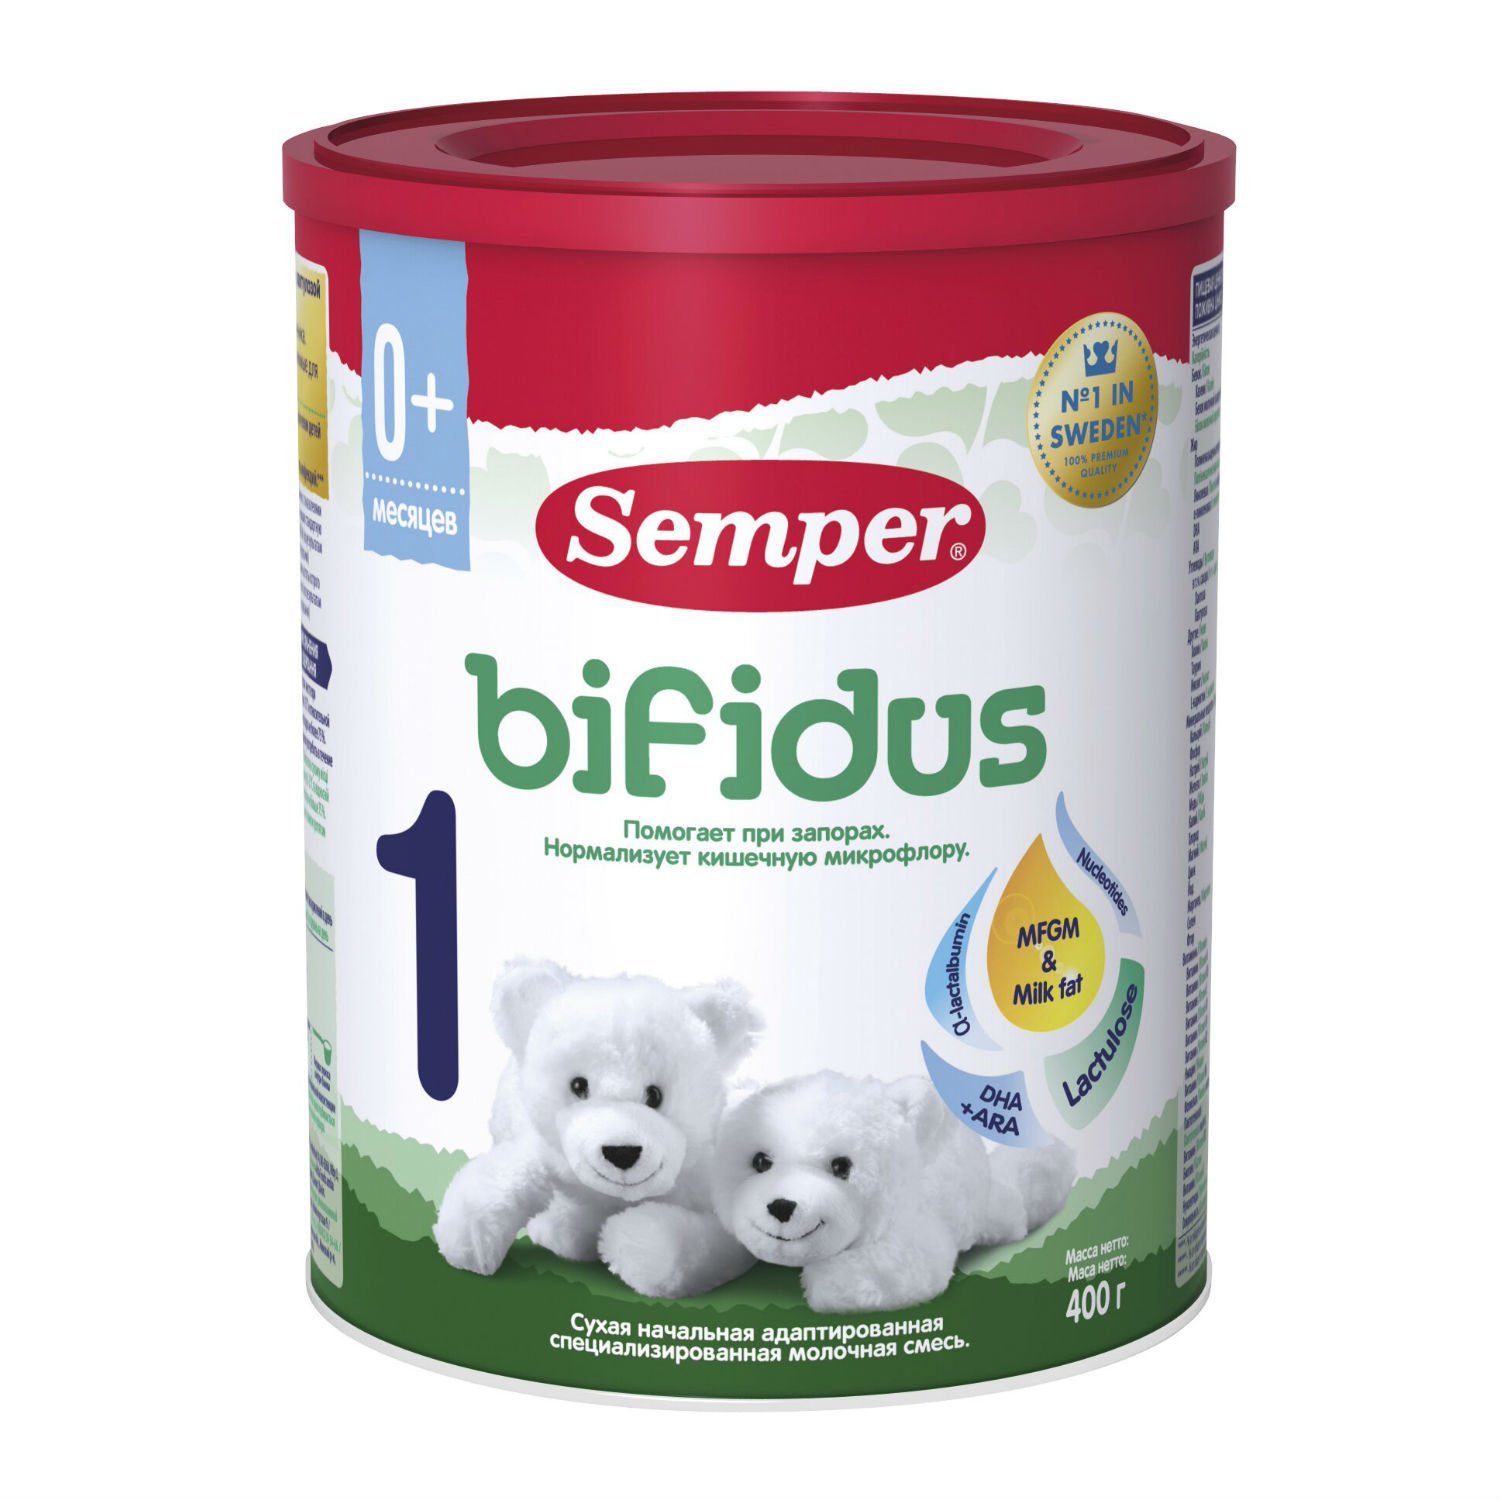 Sữa Semper Bifidus Semper xanh số 1 hộp 400gr xuất xứ LB Nga